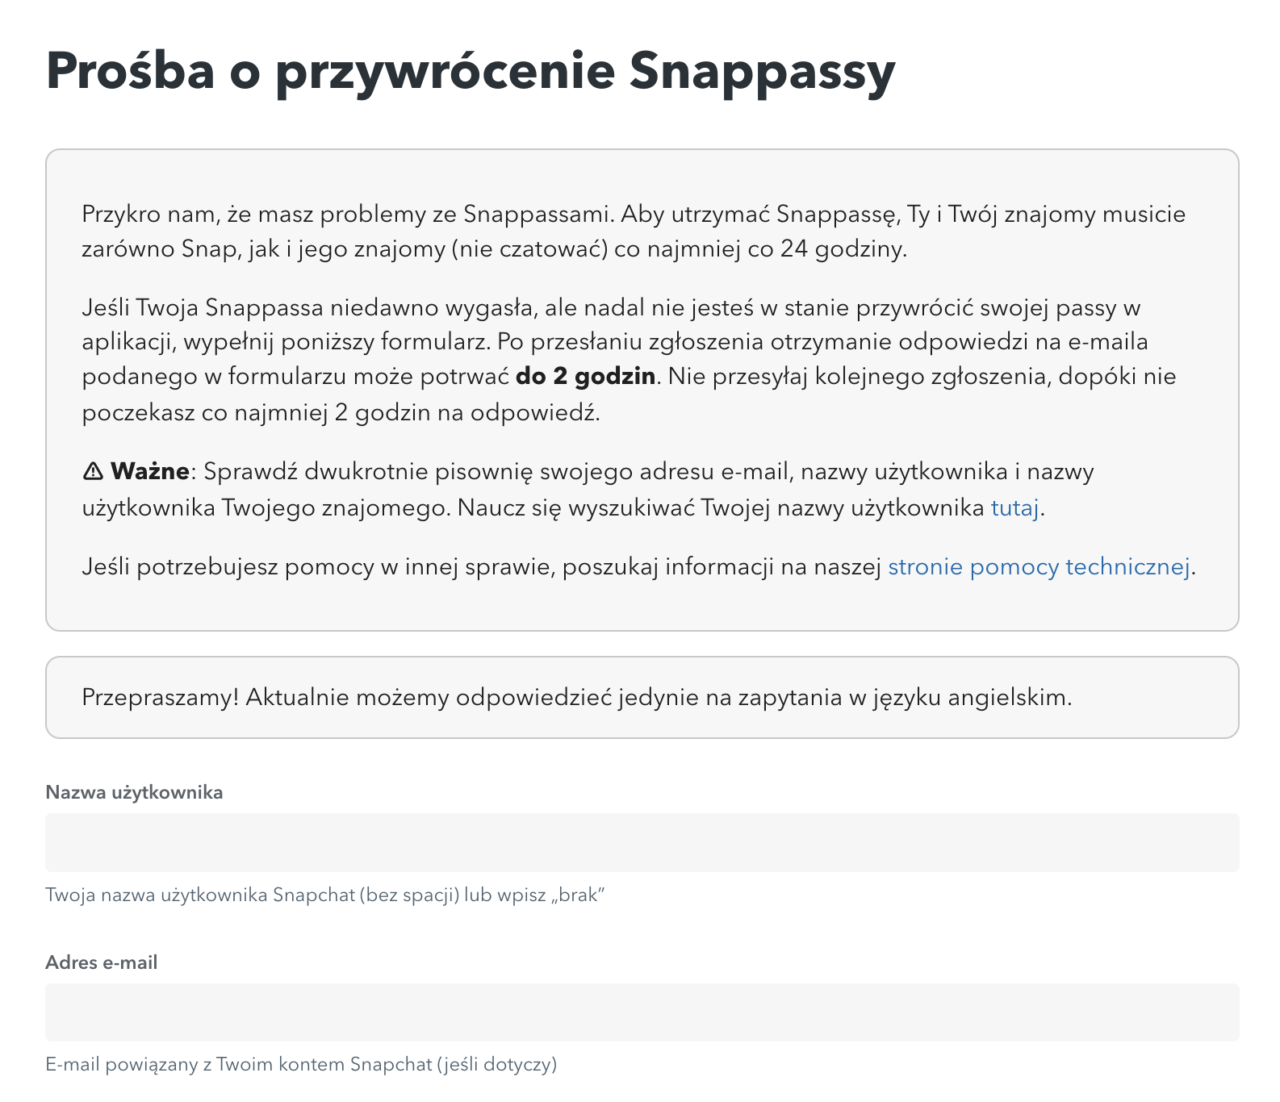 Informacja o prosbie o przywrócenie dostępu do Snapchata w języku polskim z formularzem kontaktowym do wypełnienia.